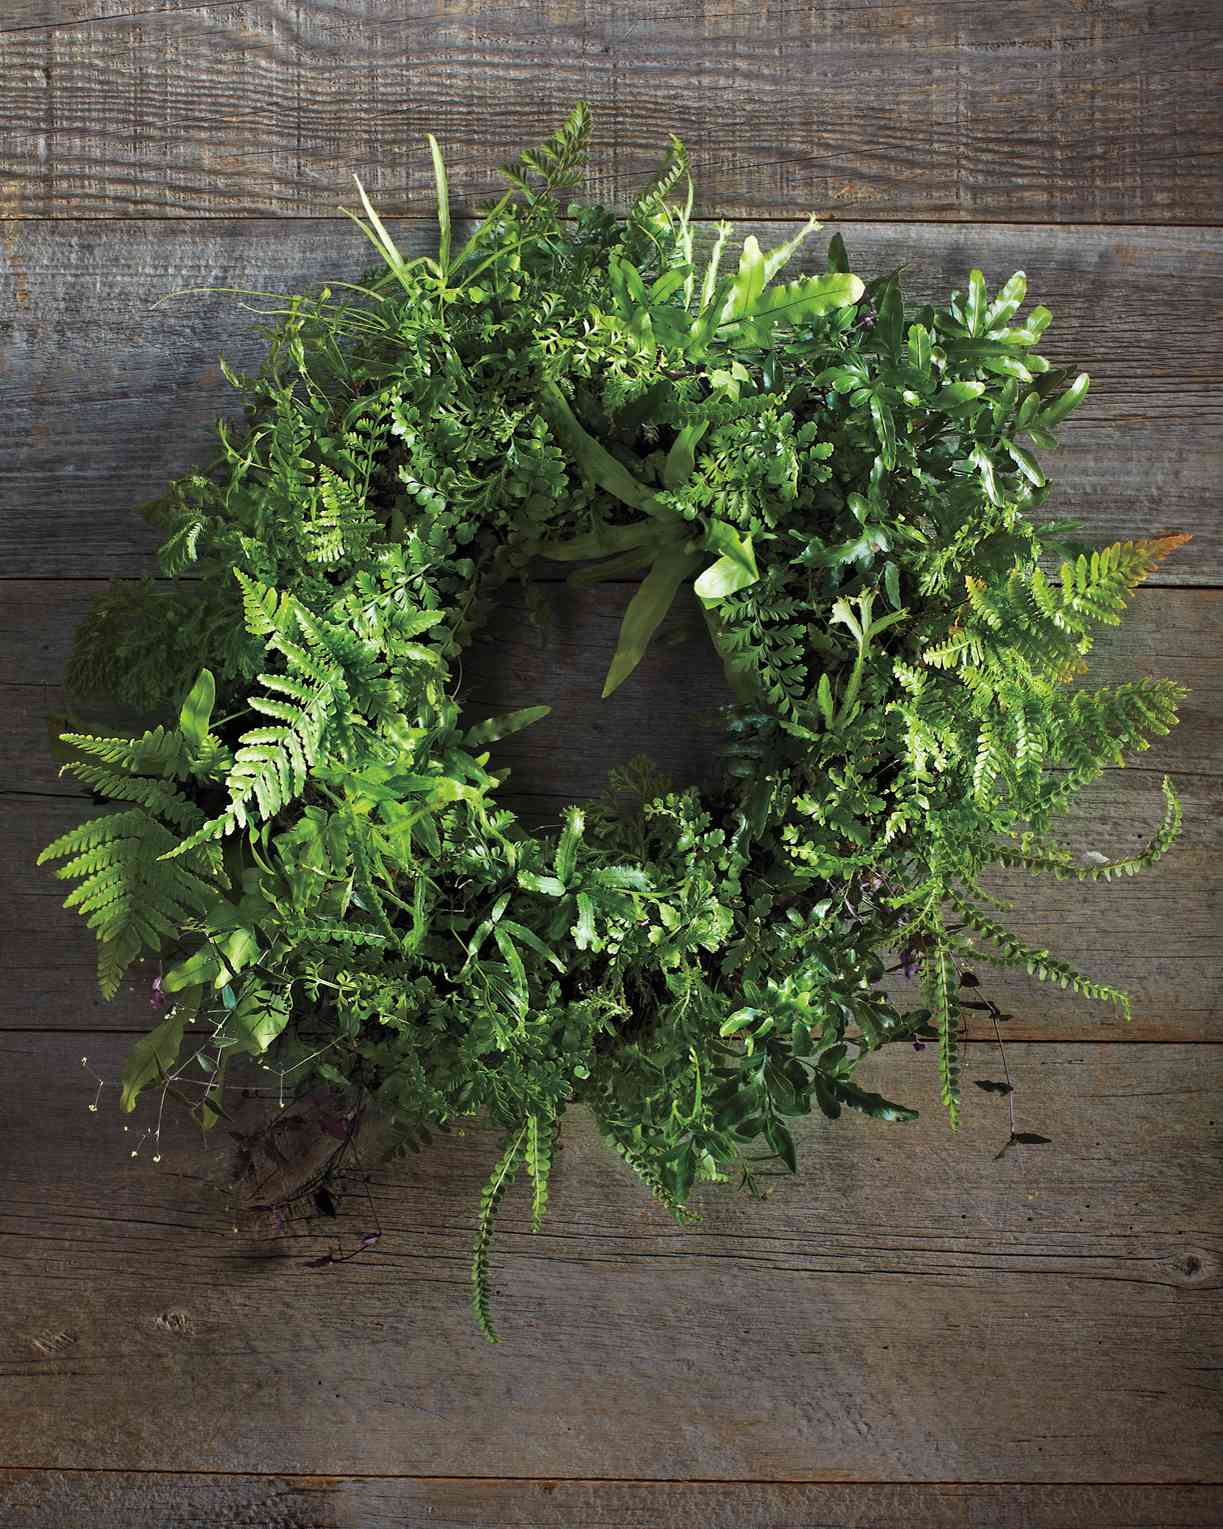 Fern Wreath